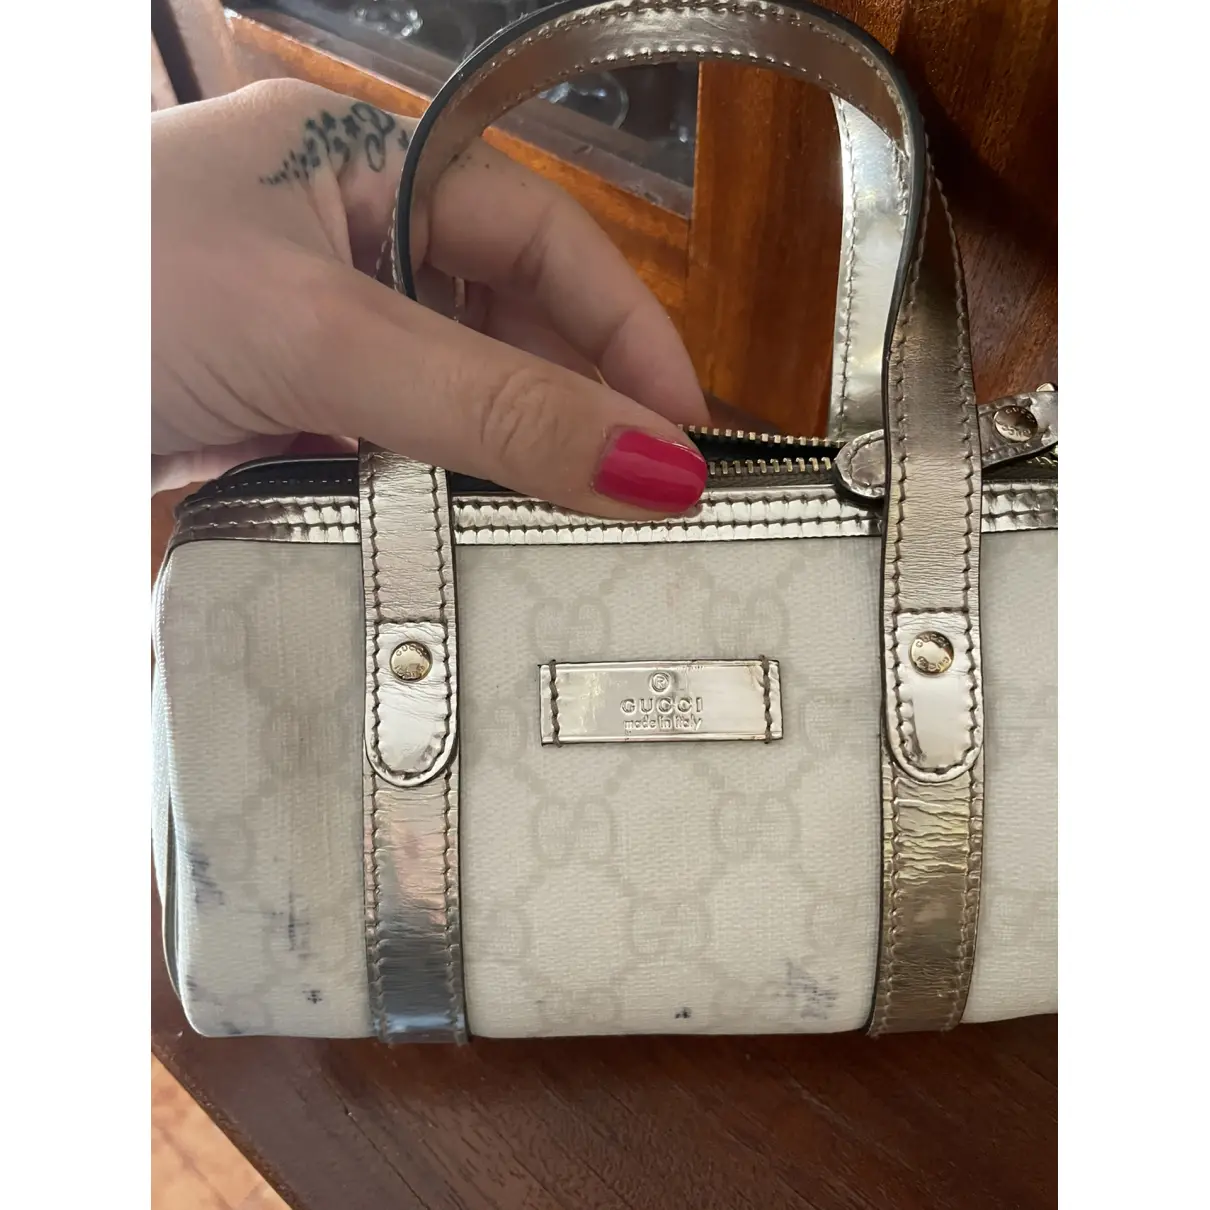 Joy cloth handbag Gucci